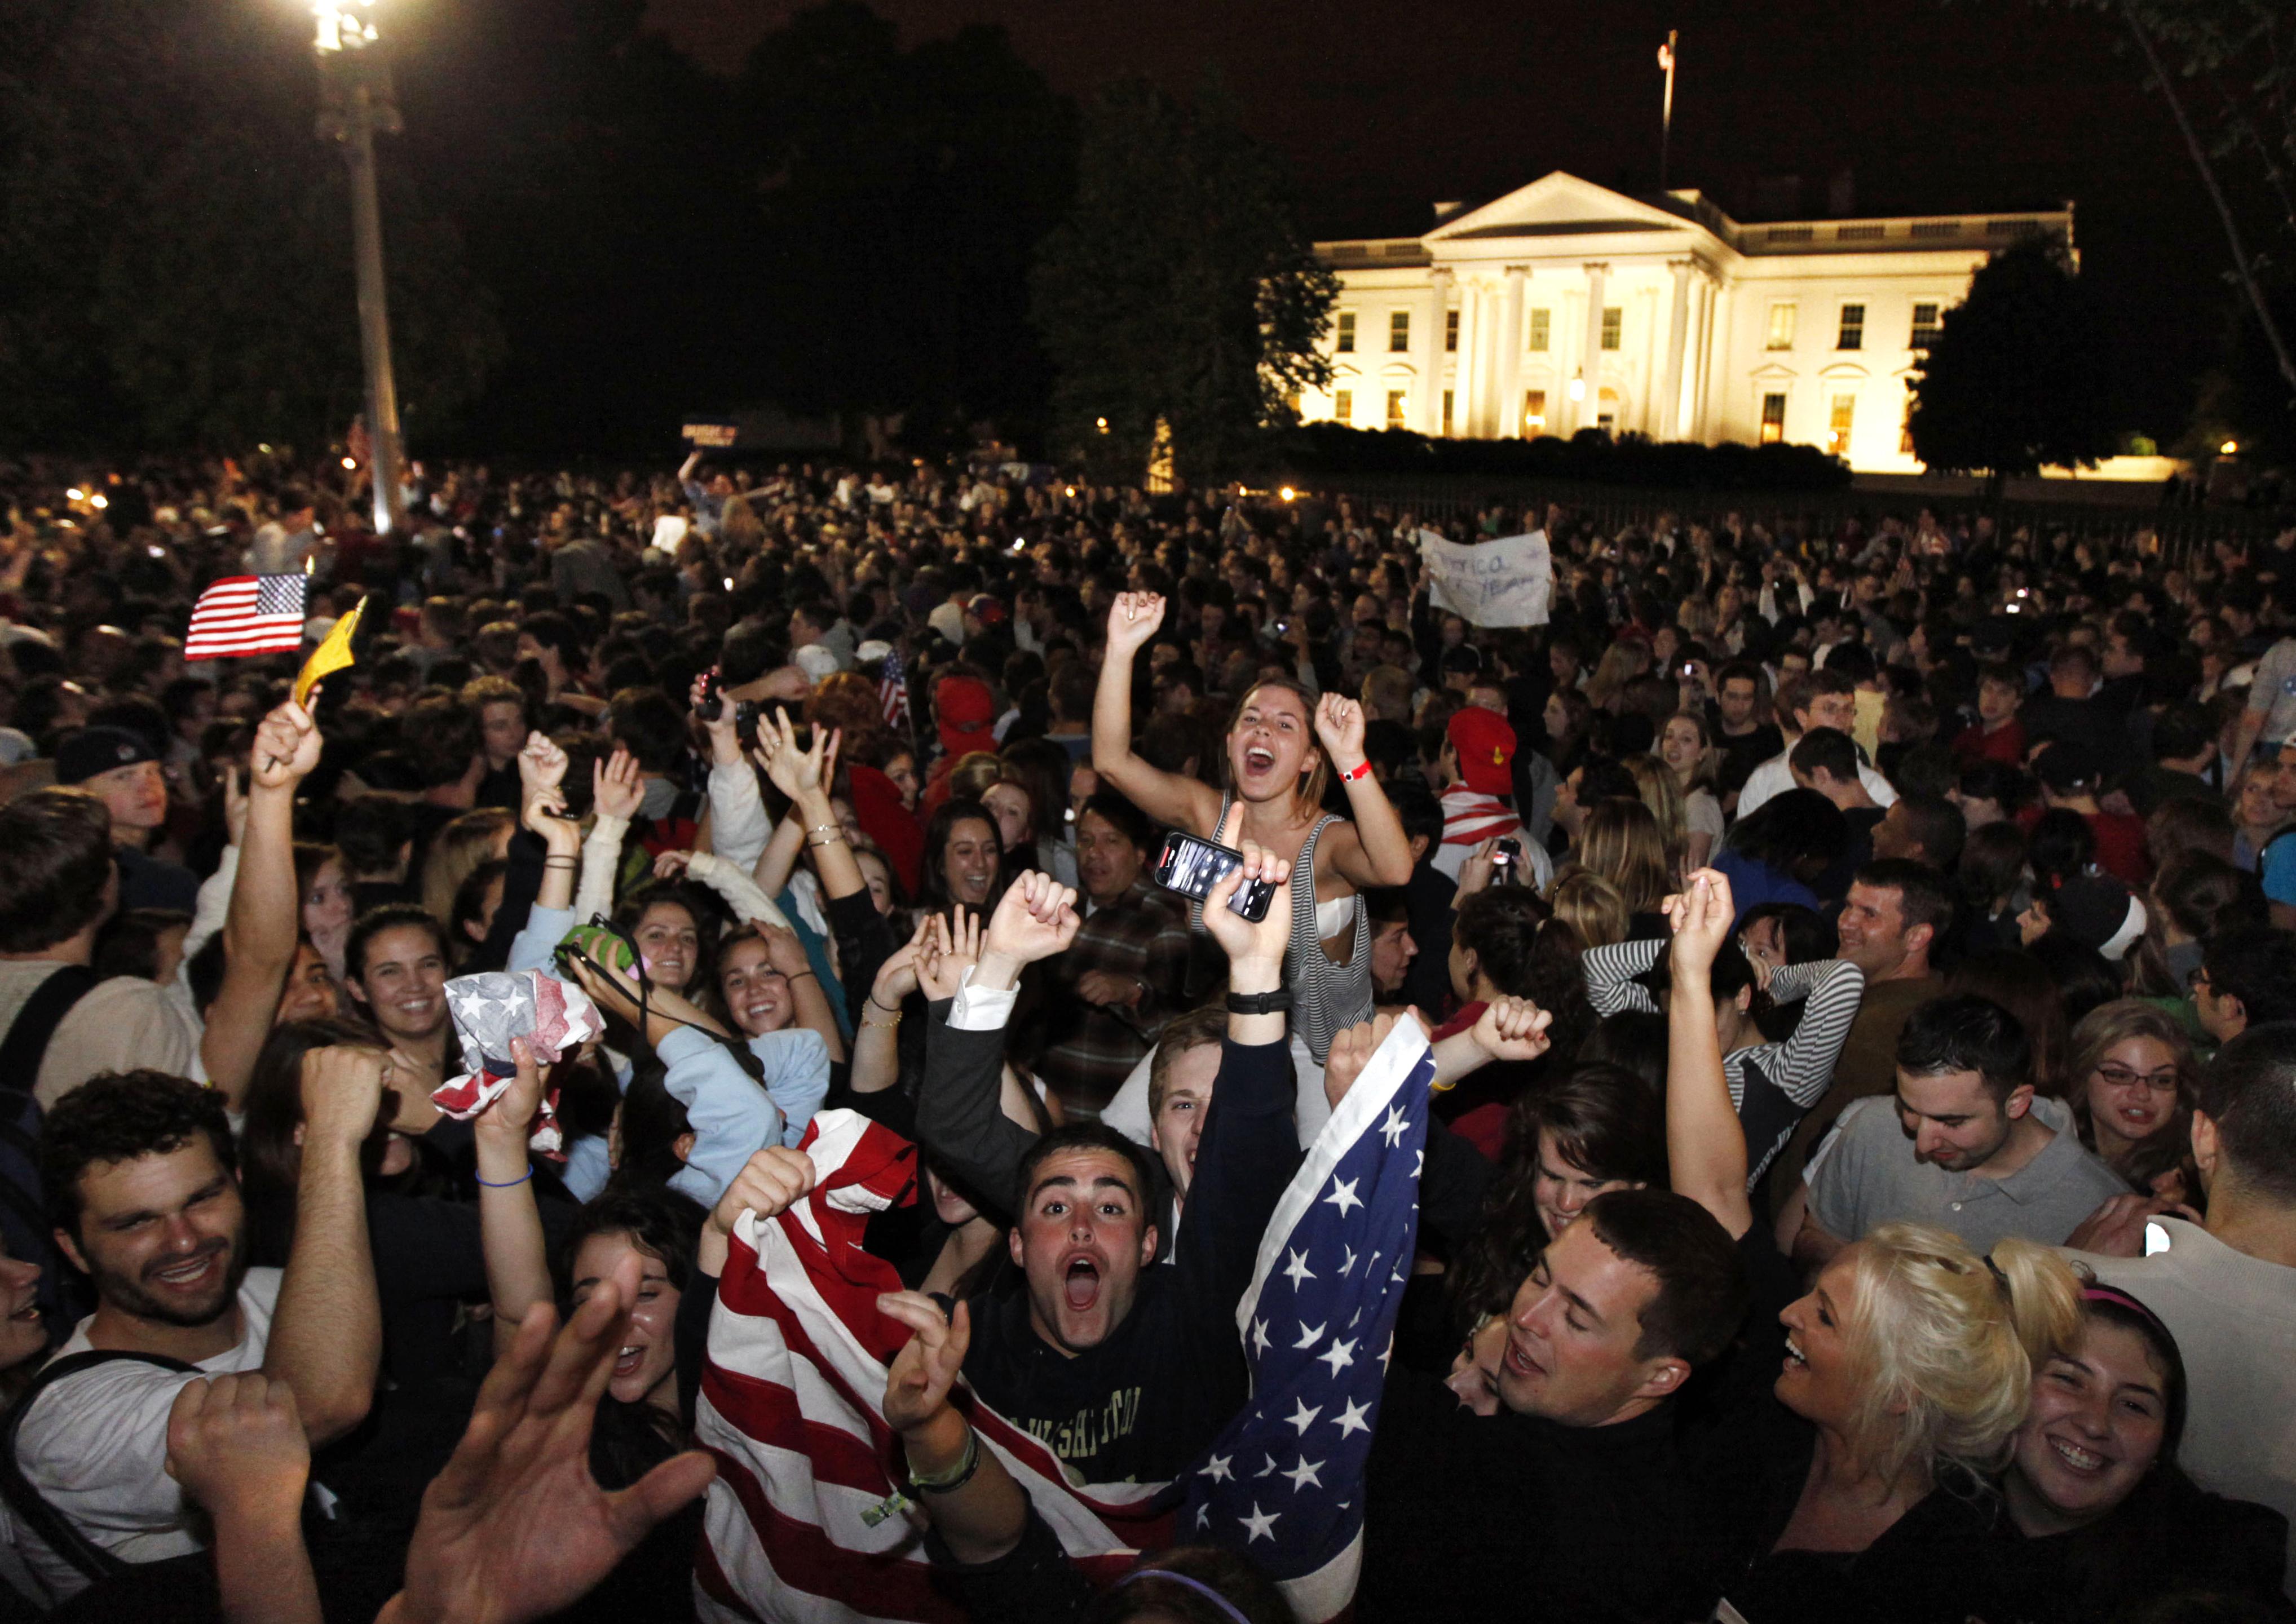 En stor folkmassa har samlats utanför Vita huset för att fira Usama Bin Ladins död. Stora delar av världen vaknade upp till nyheten om att amerikanska underrättelsetjänsten CIA sköt ihjäl den fruktade terrorledaren. Den amerikanske presidenten Barack Obam